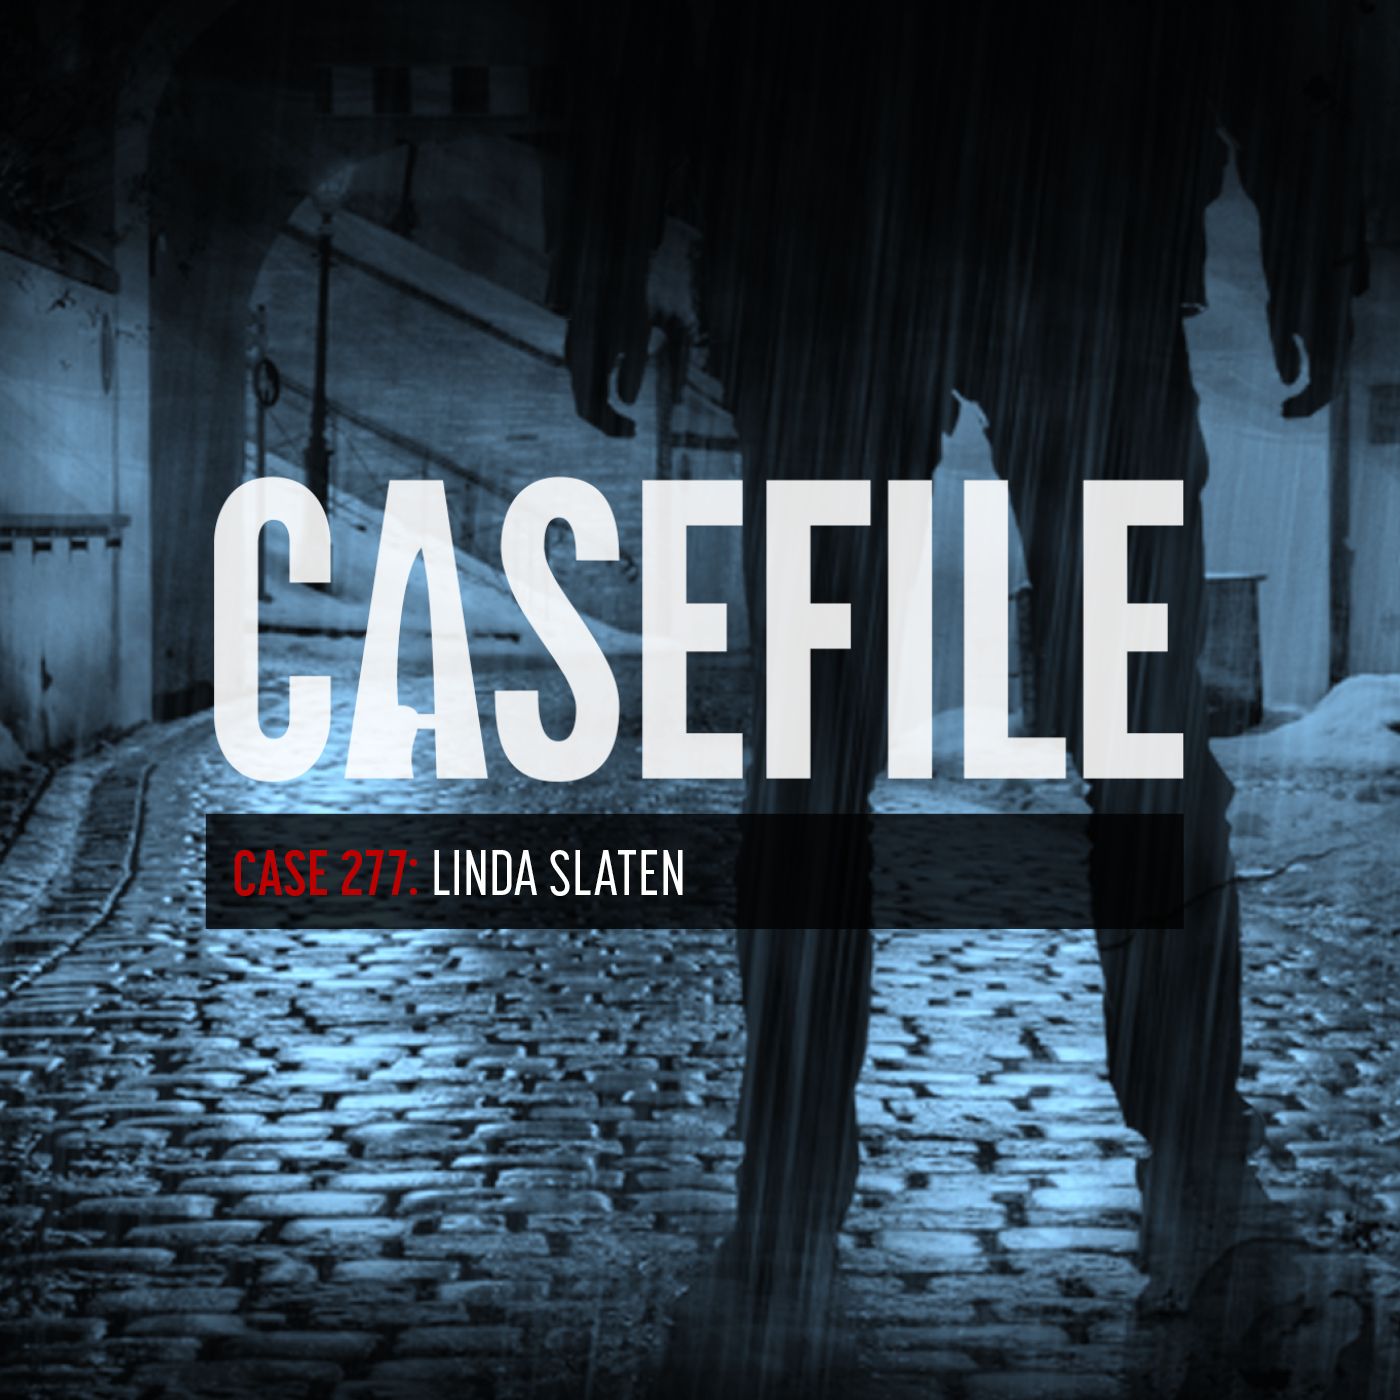 Case 277: Linda Slaten